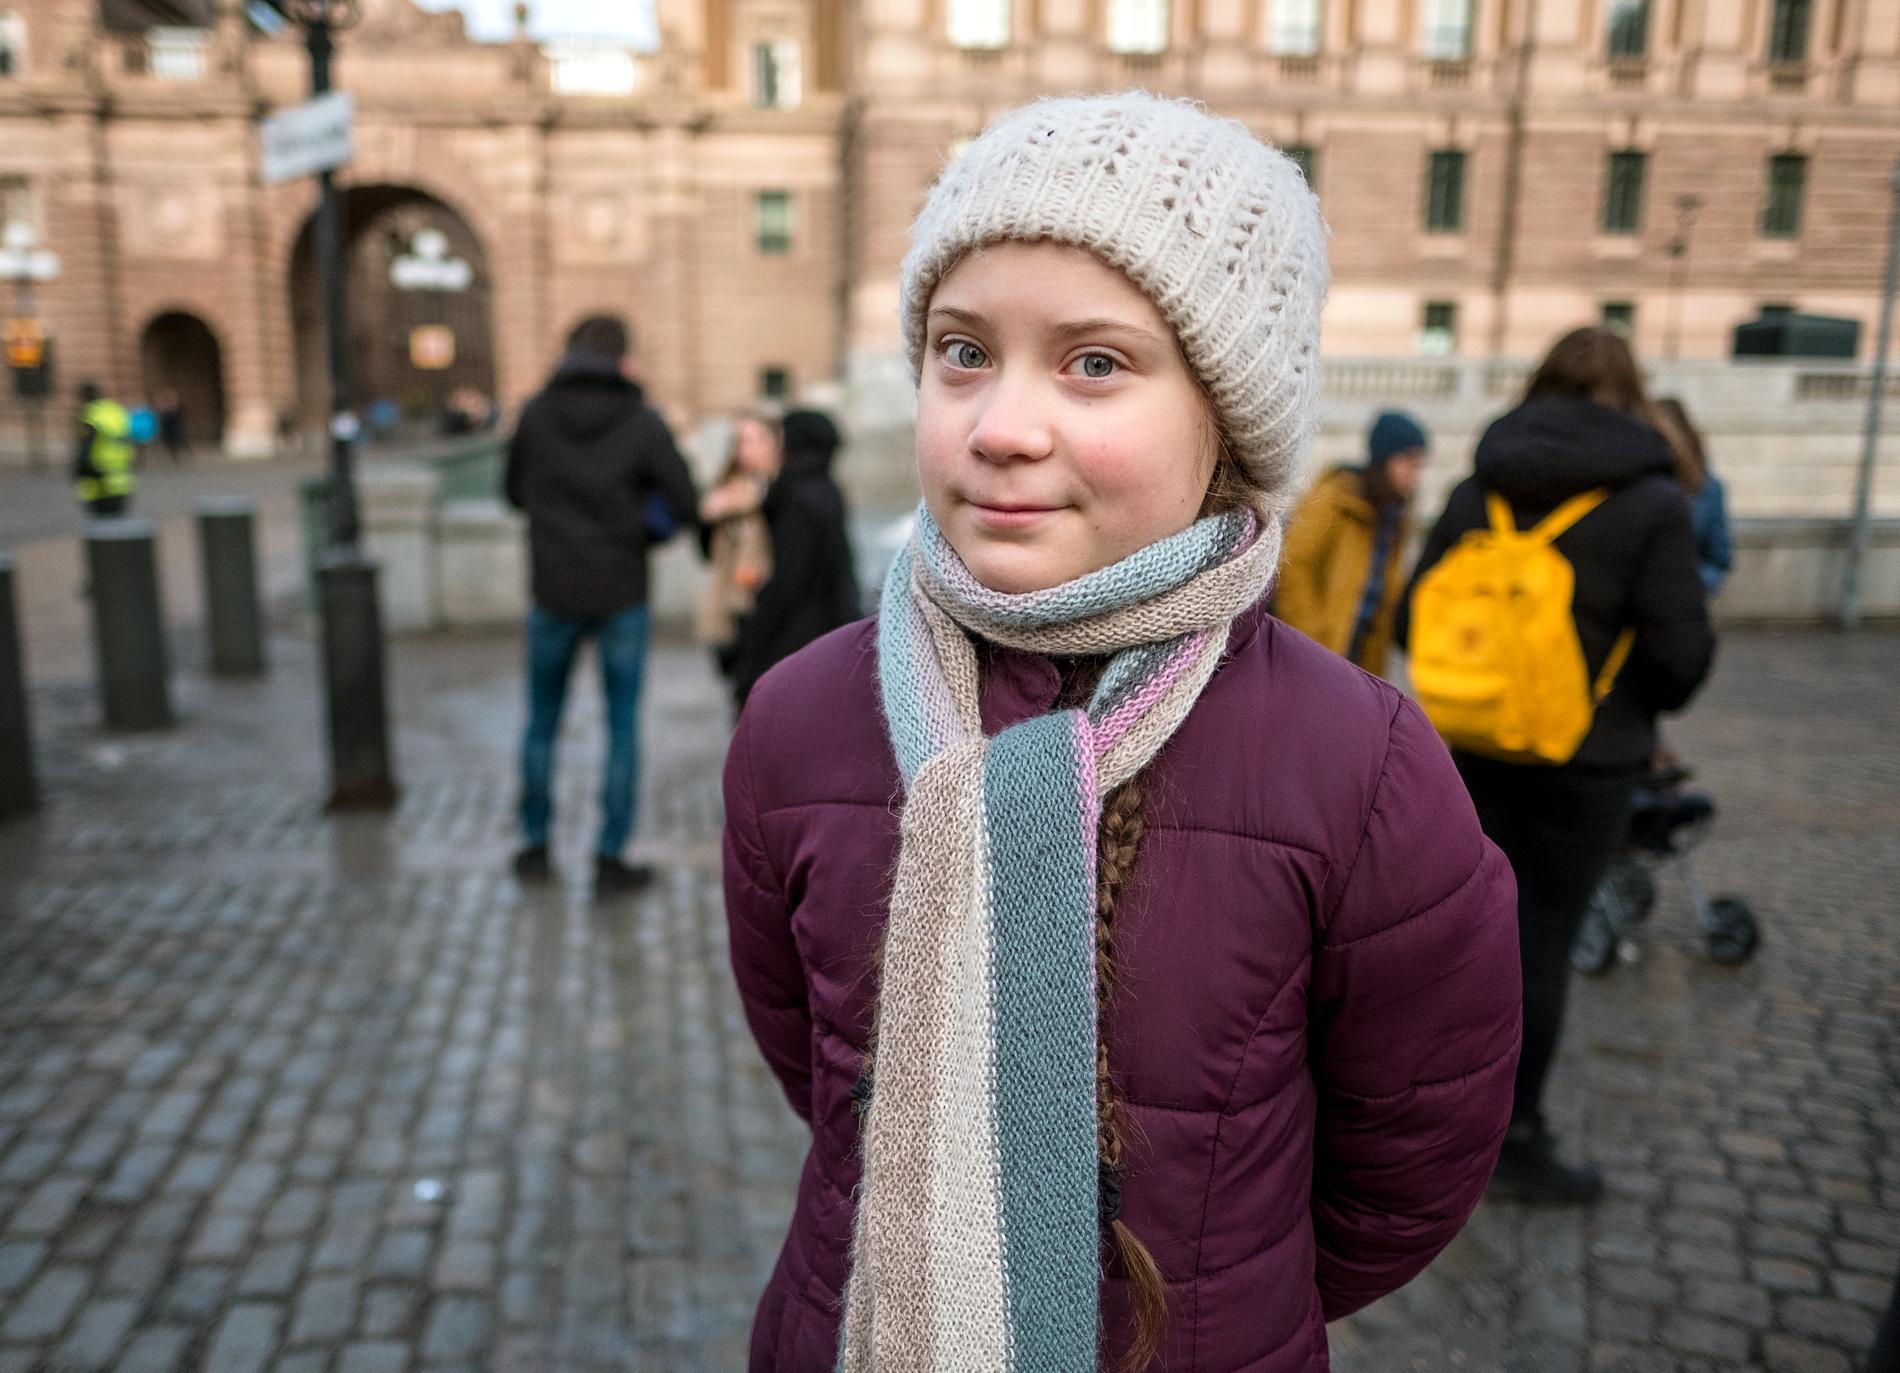 15-åriga Greta Thunberg satte sig ensam med en skylt utanför Sveriges riksdag – ett halvår senare skolstrejkar tusentals ungdomar världen över för klimatet.